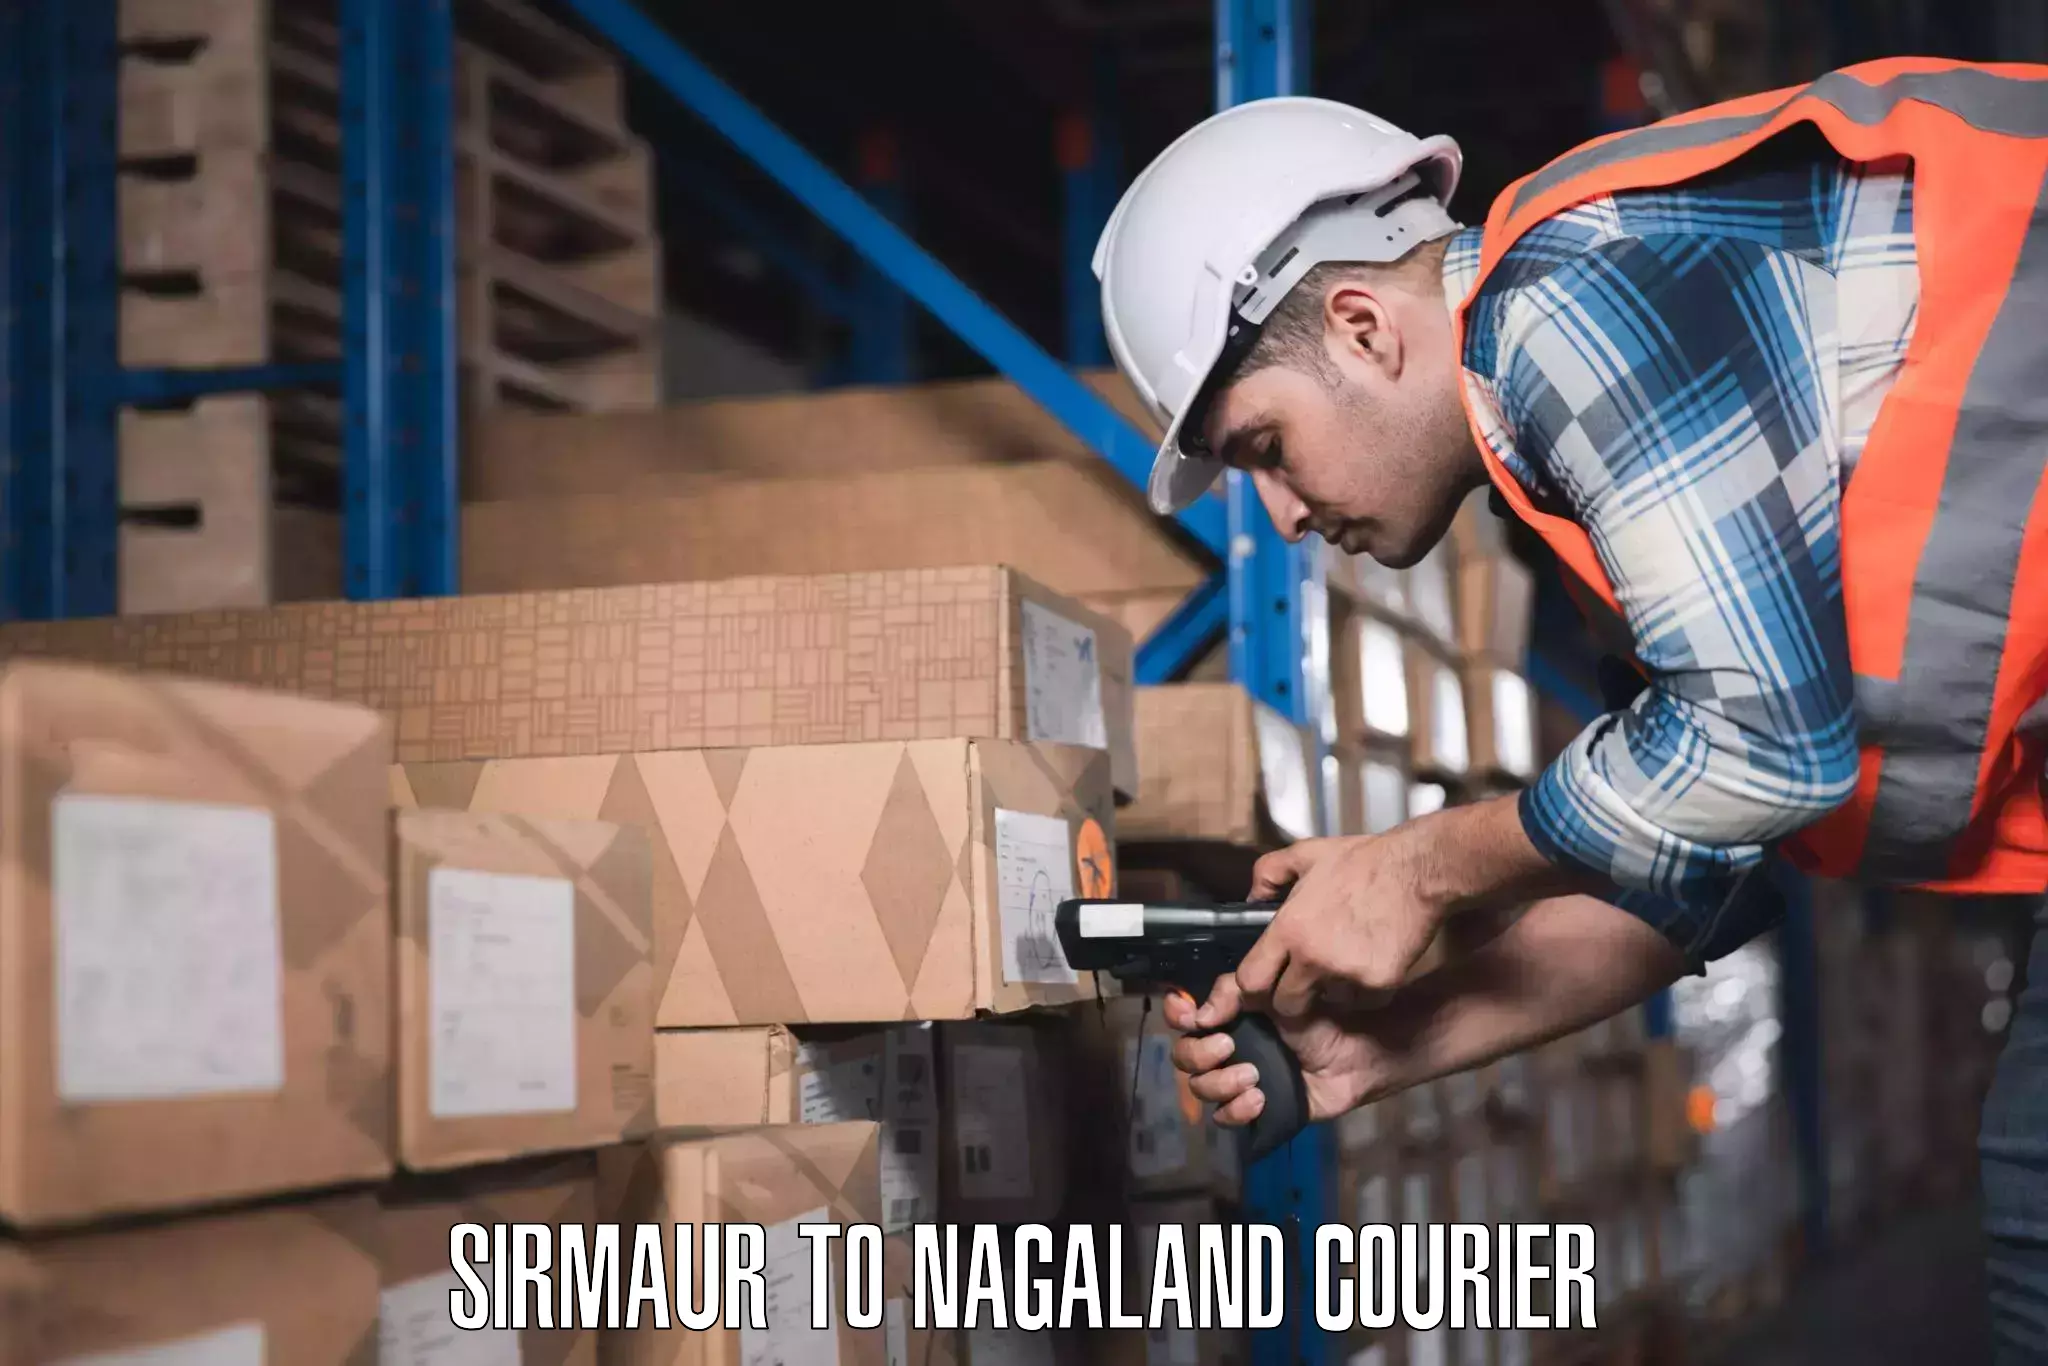 Baggage shipping service Sirmaur to Nagaland